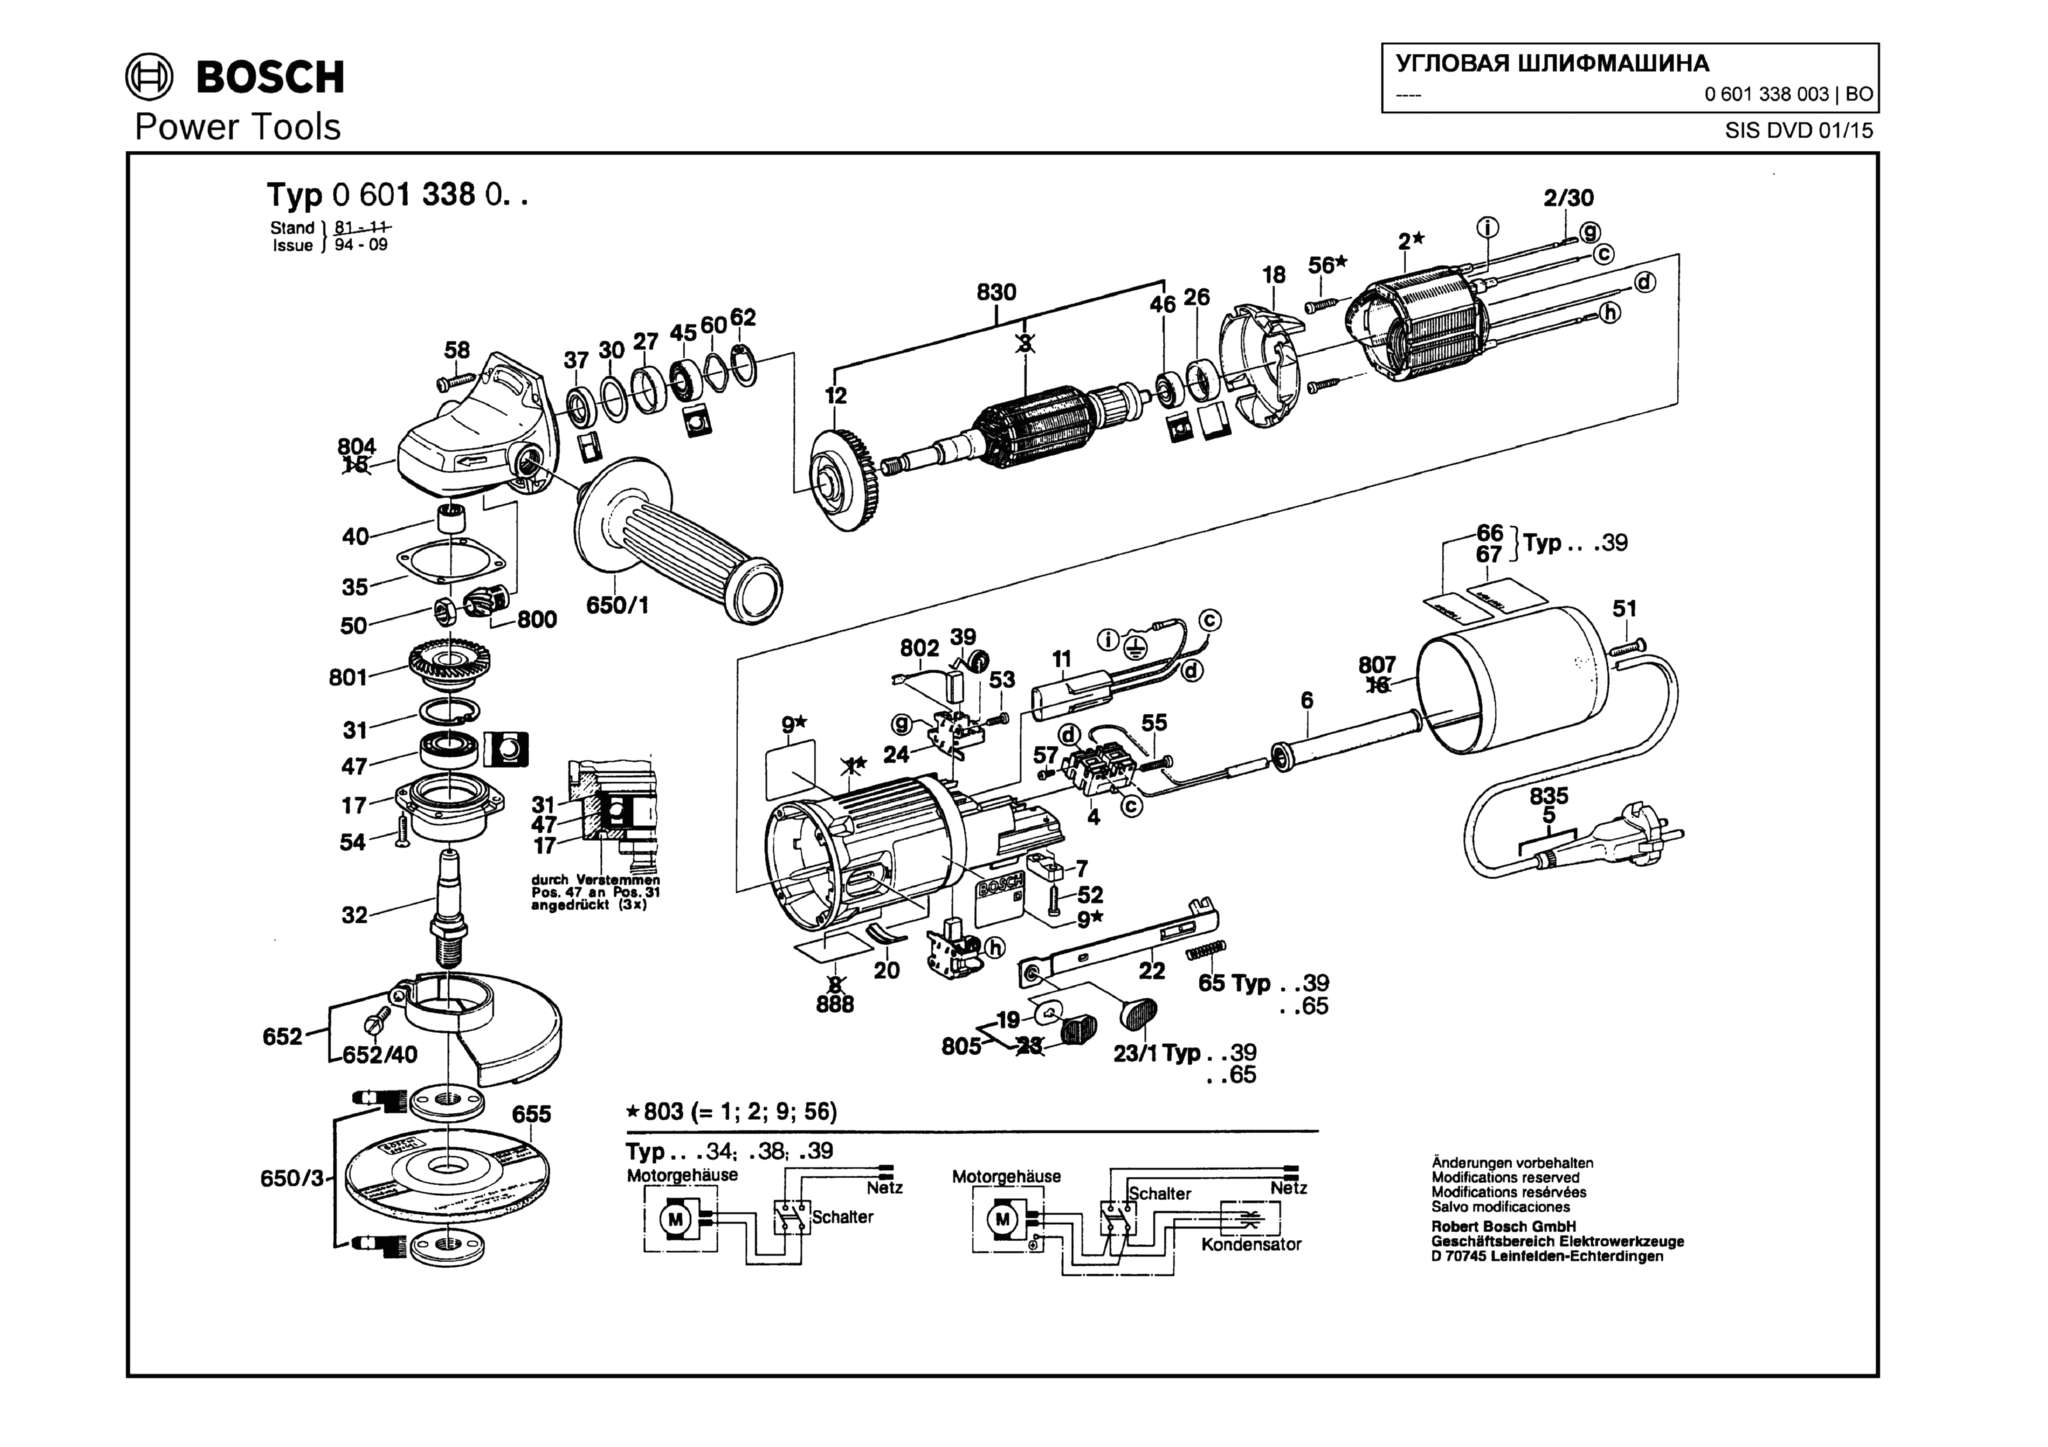 Запчасти, схема и деталировка Bosch (ТИП 0601338003)